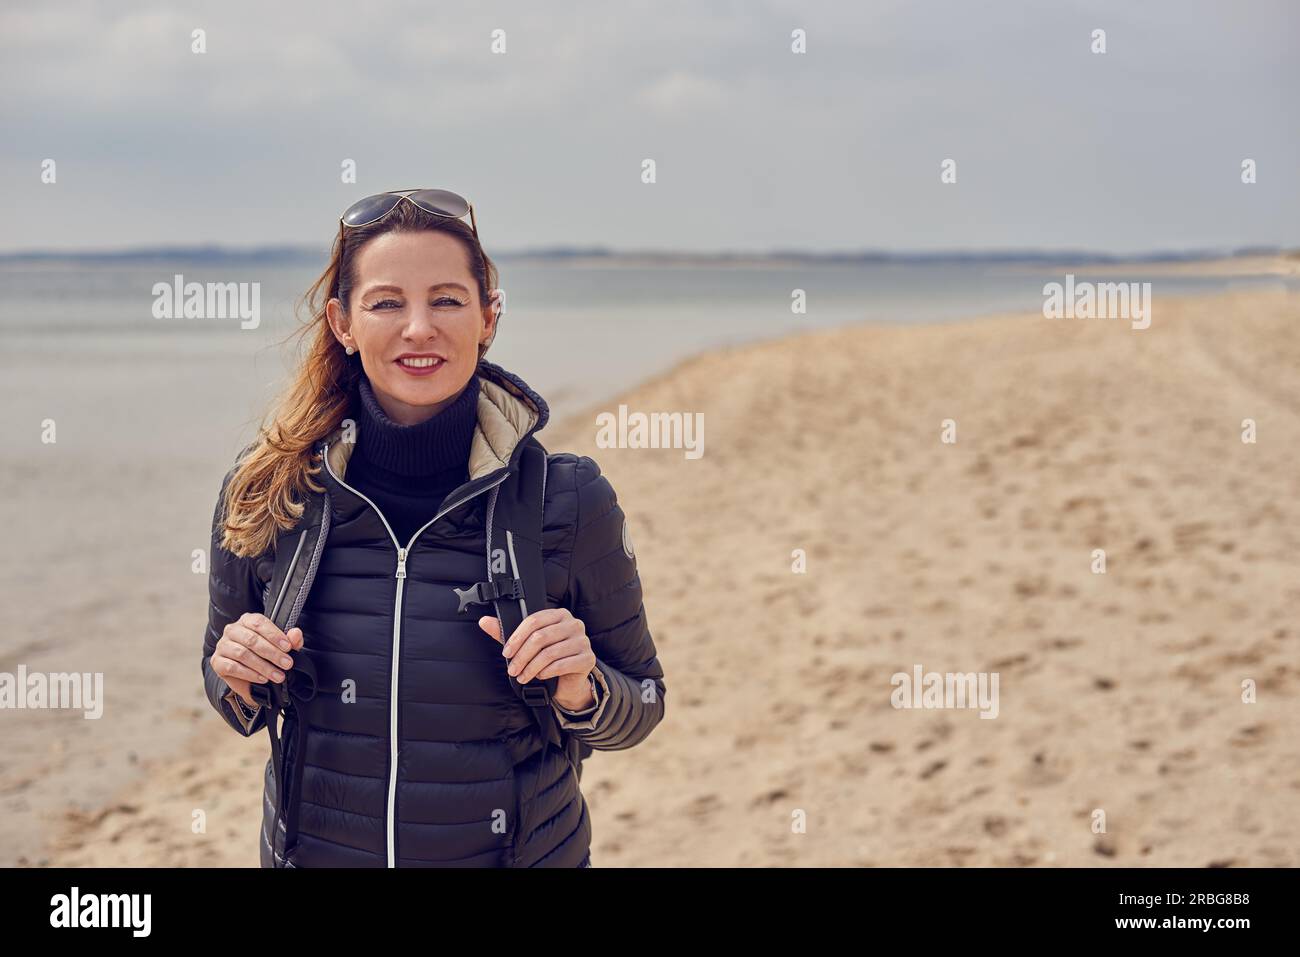 Donna attraente e sana che si gode un'escursione sulla spiaggia in una fredda giornata ricoperta di sole sorridendo davanti alla macchina fotografica sulla sabbia che le regge le cinghie Foto Stock